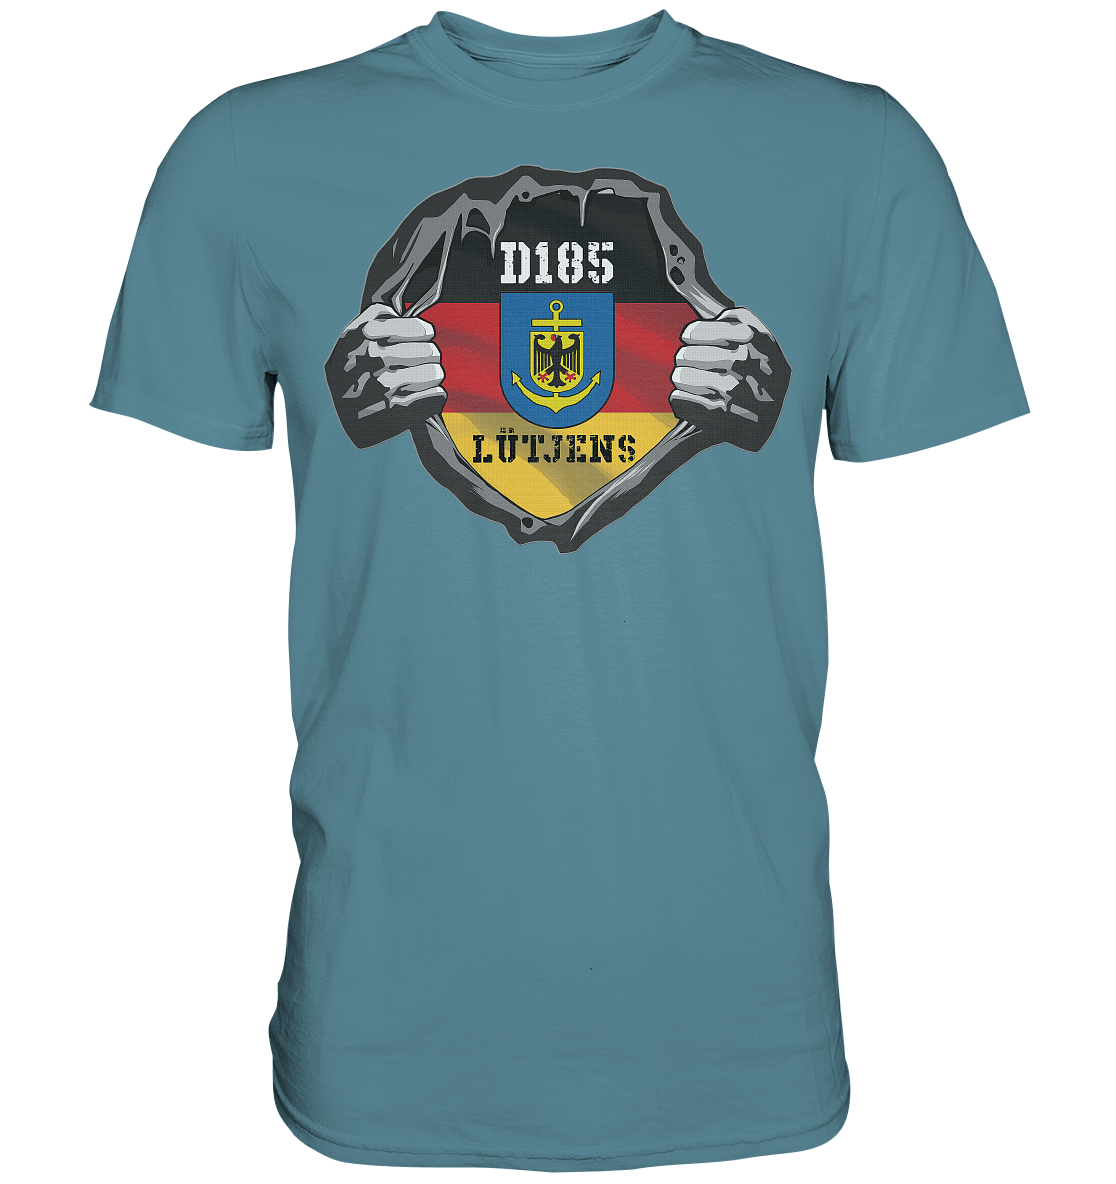 Aufriss D185 LÜTJENS - Premium Shirt